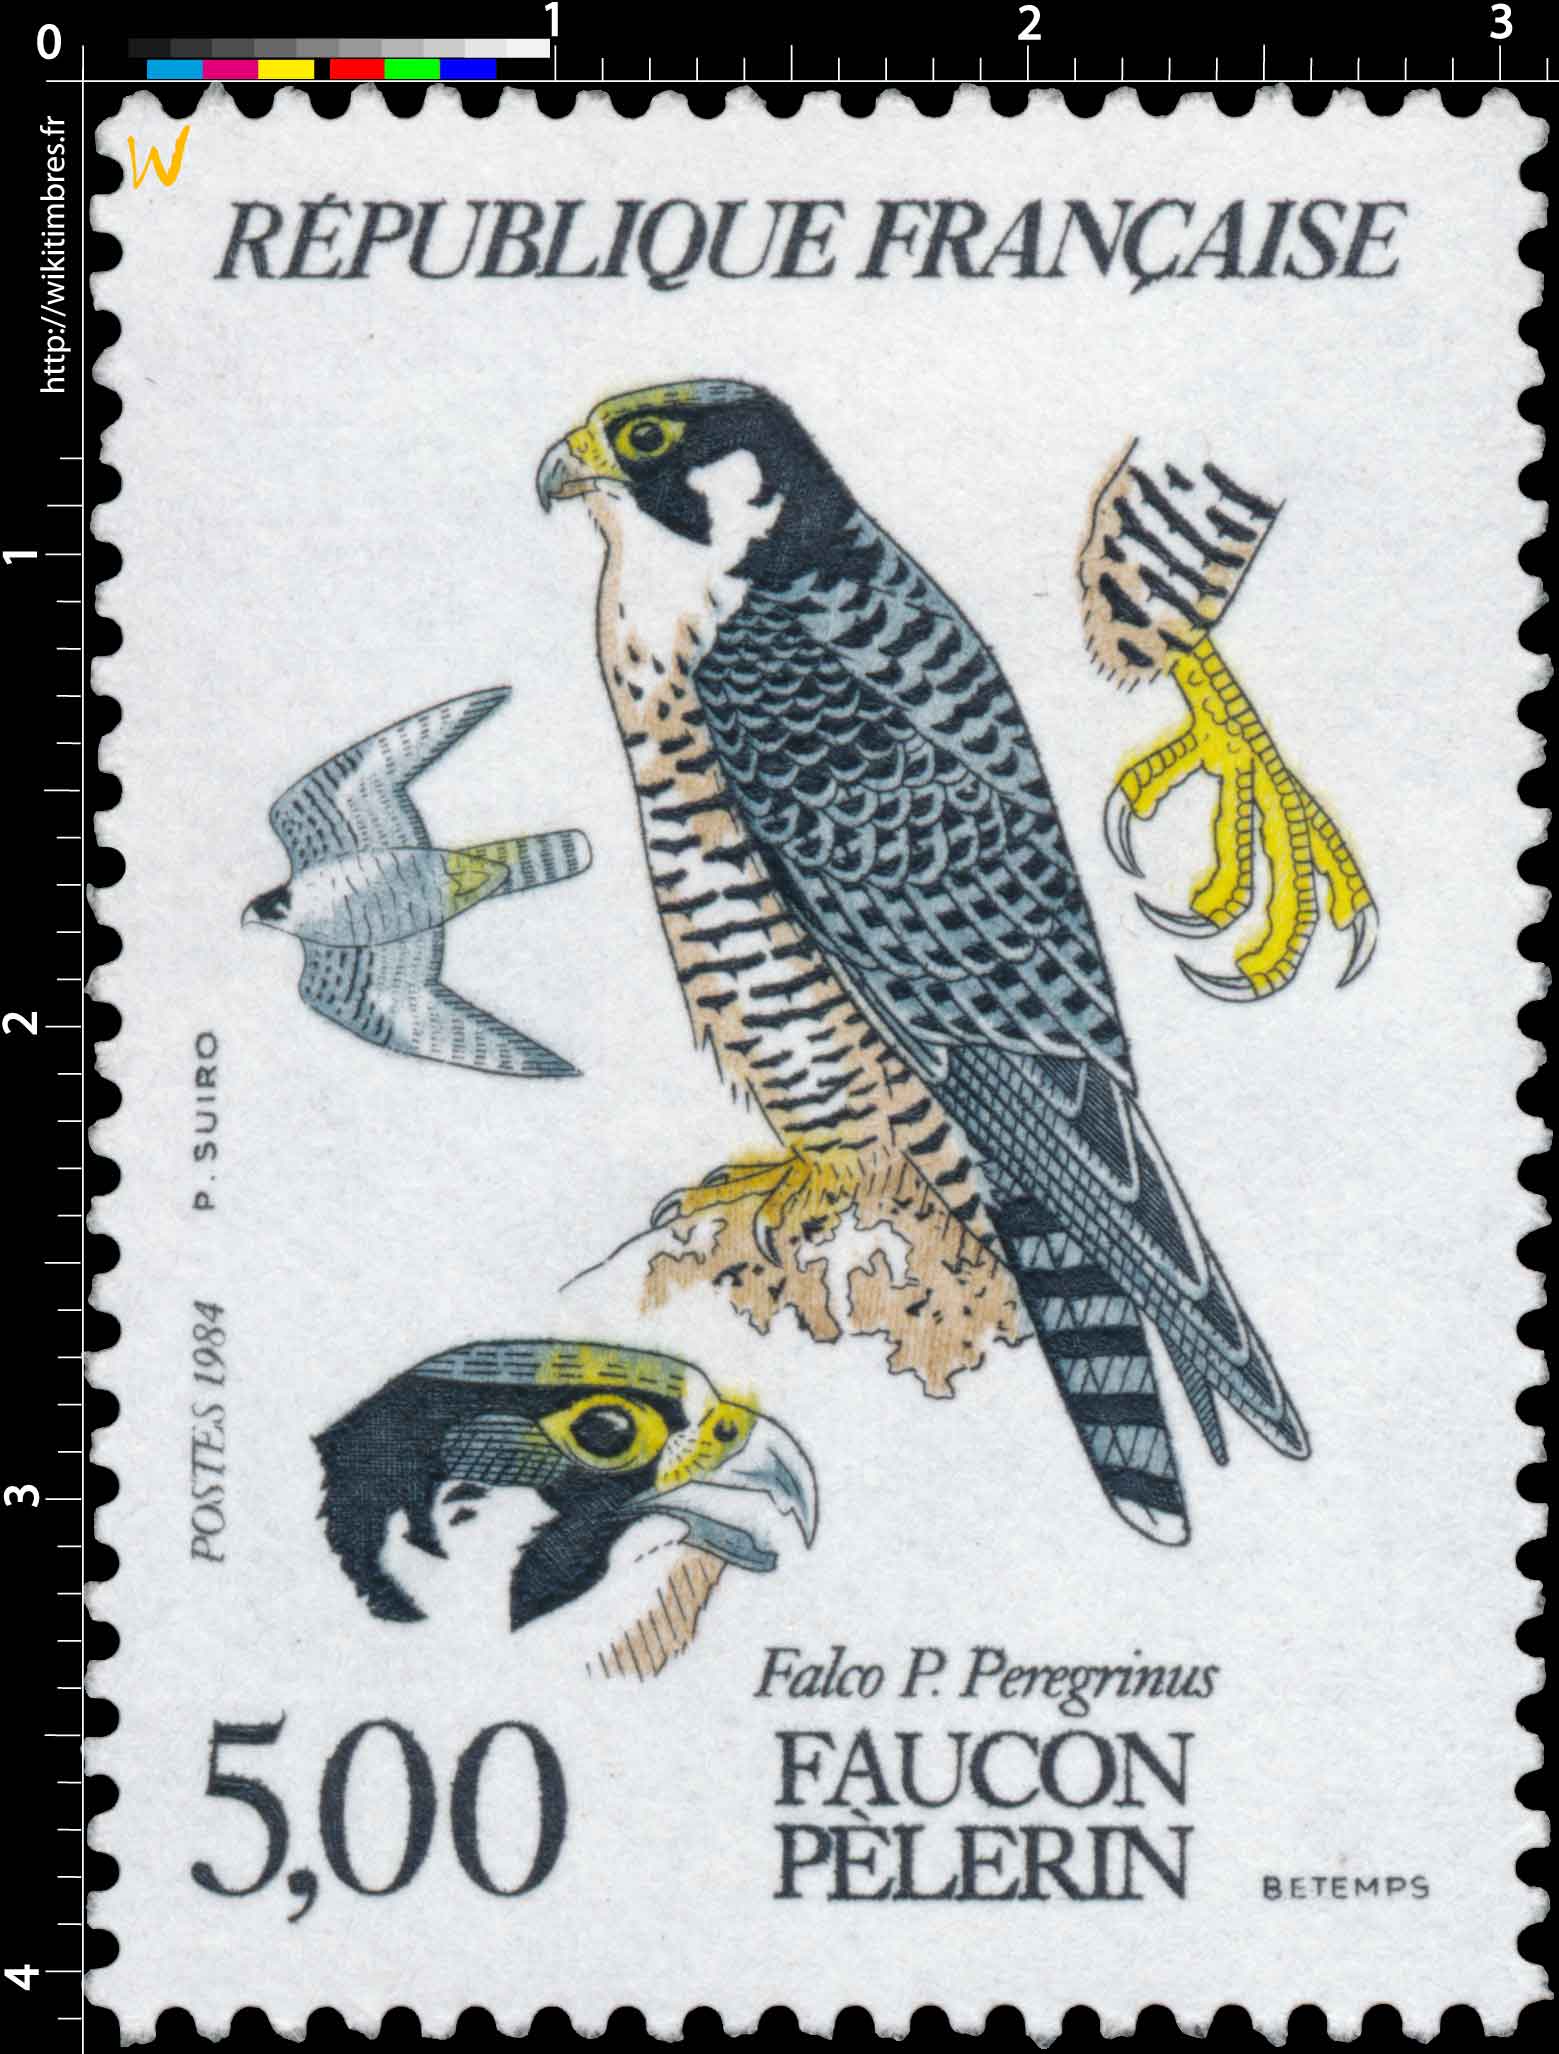 1984 FAUCON PÈLERIN Falco P. Peregrinus